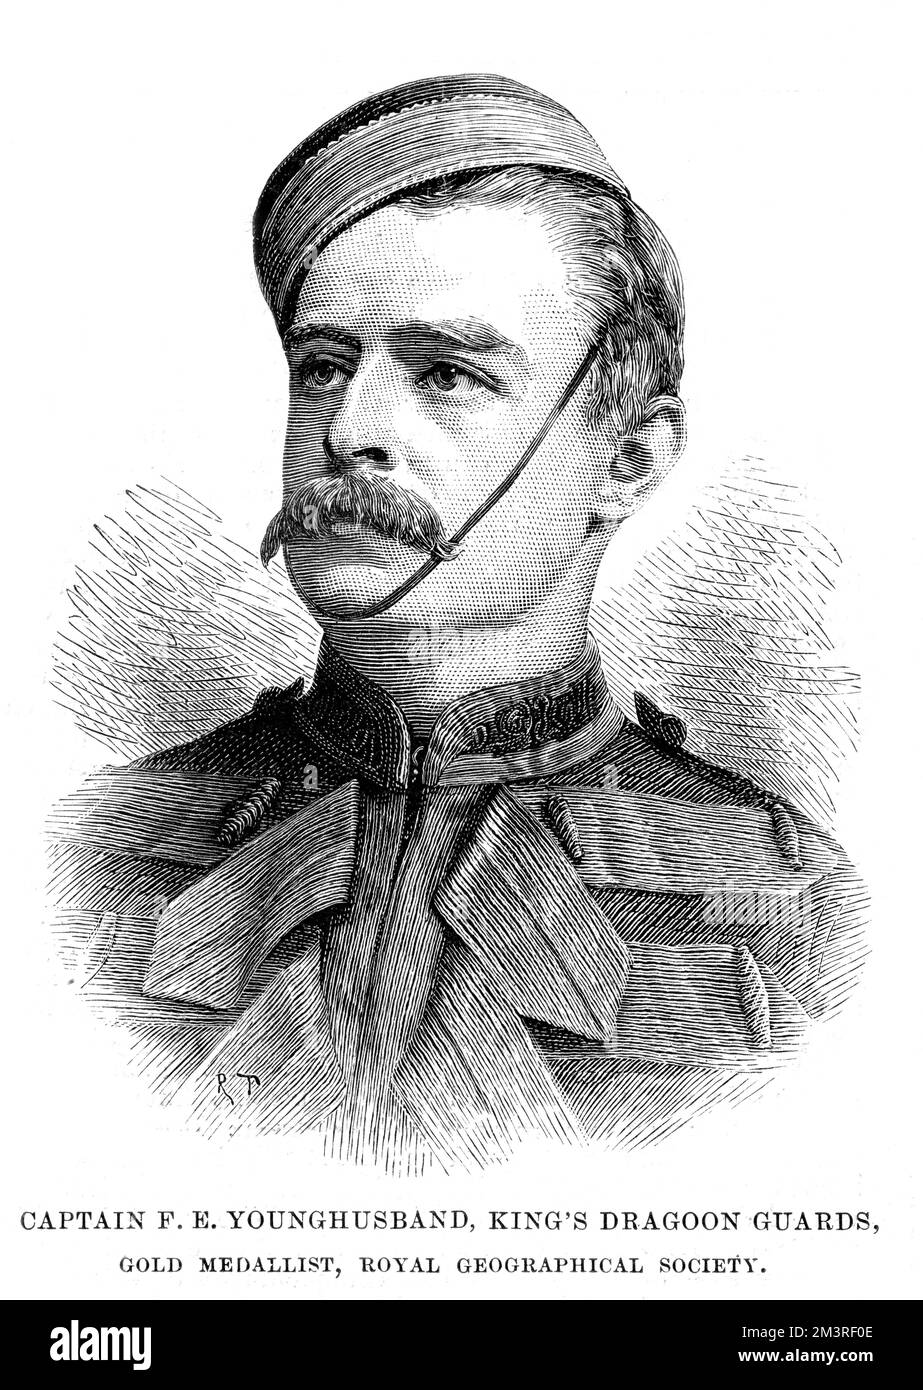 Portrait von Captain F. E. Younghusband von den Kings Dragoon Guards, der eine der beiden Goldmedaillen gewann, die jährlich von der Royal Geographical Society an renommierte Entdecker verliehen werden. Datum: 1890 Stockfoto